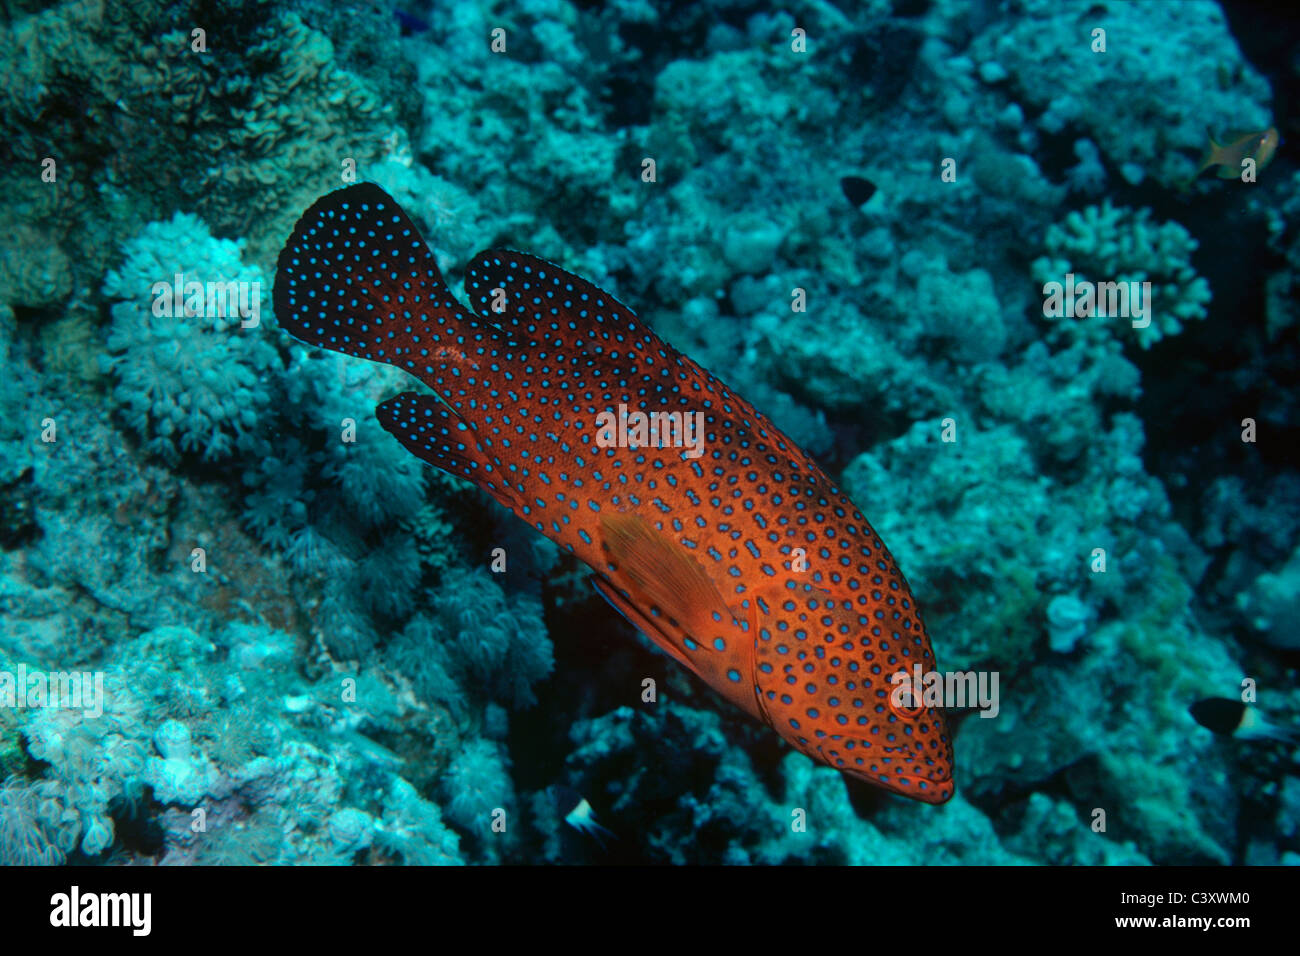 Le Mérou corail (Cephalophis Miniata). Egypte - Mer Rouge Banque D'Images